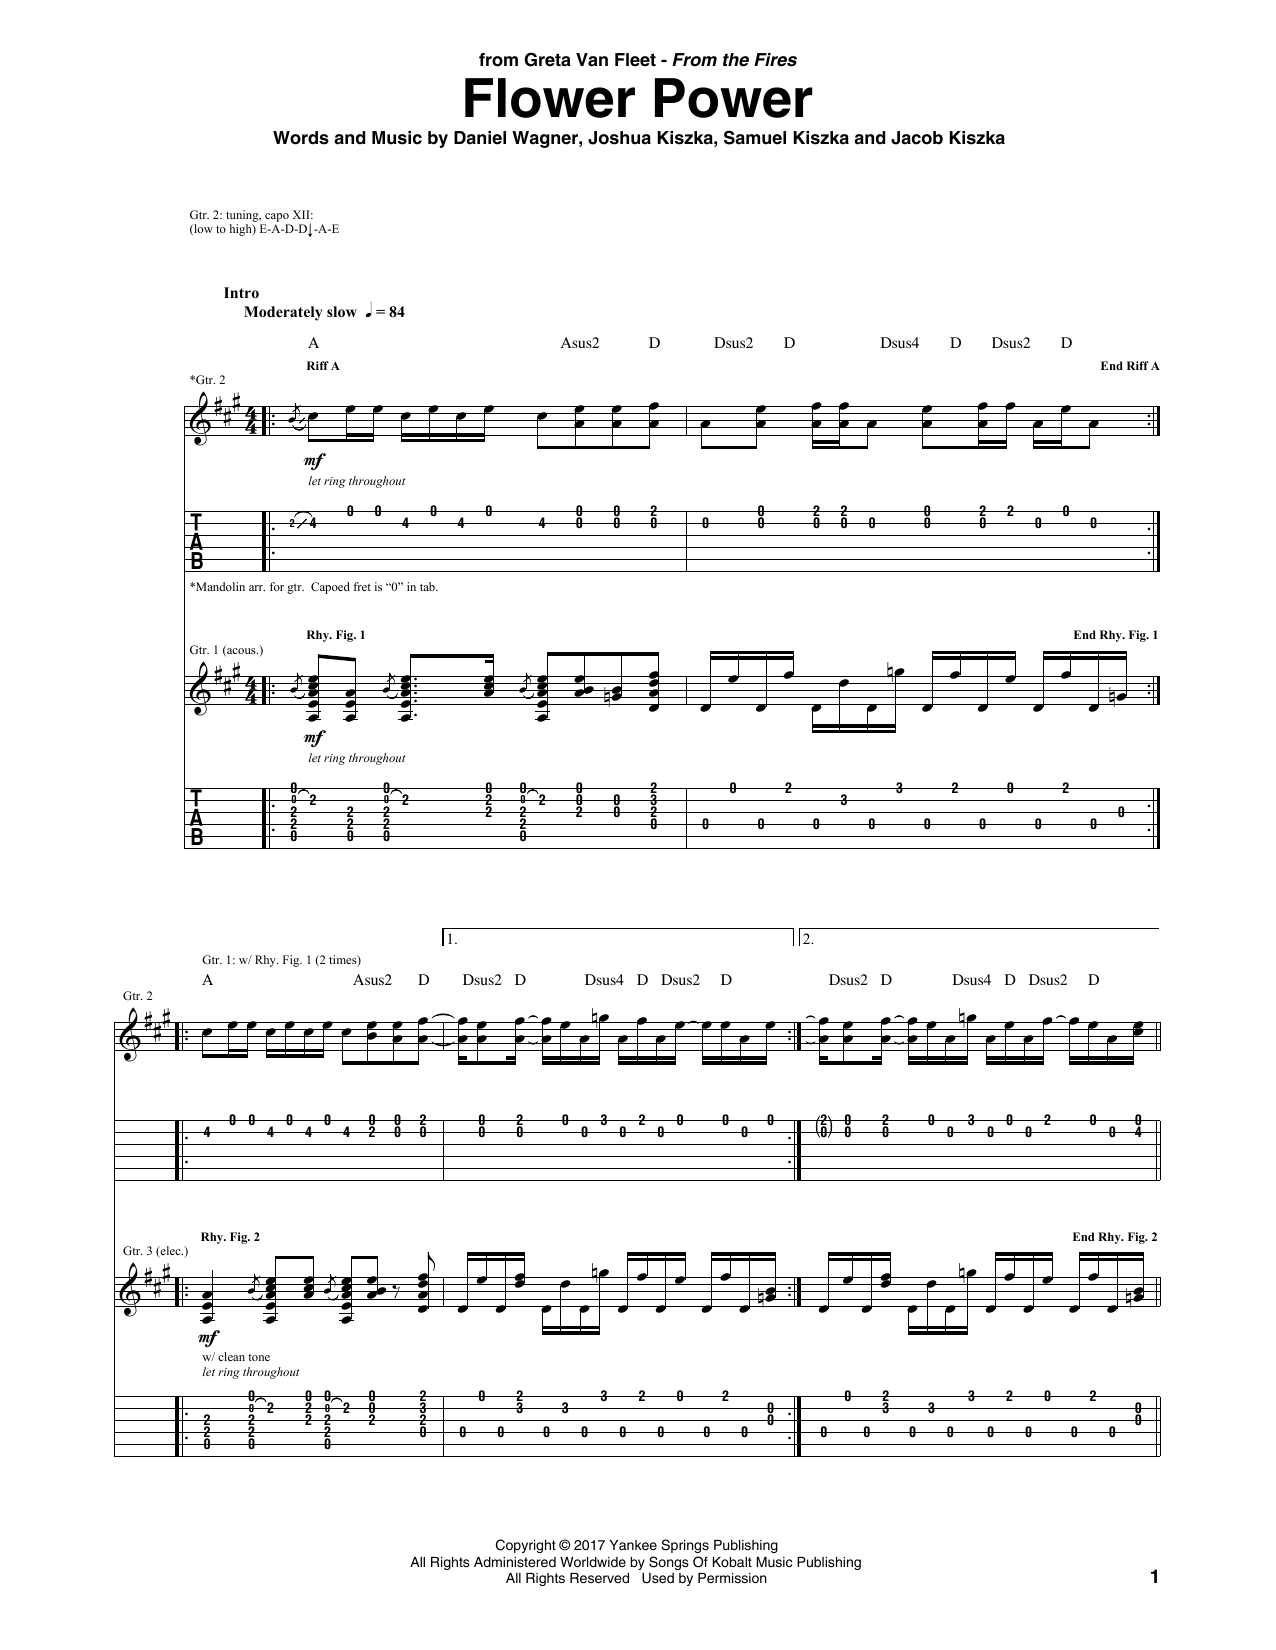 Greta Van Fleet Flower Power Sheet Music Notes & Chords for Guitar Tab - Download or Print PDF